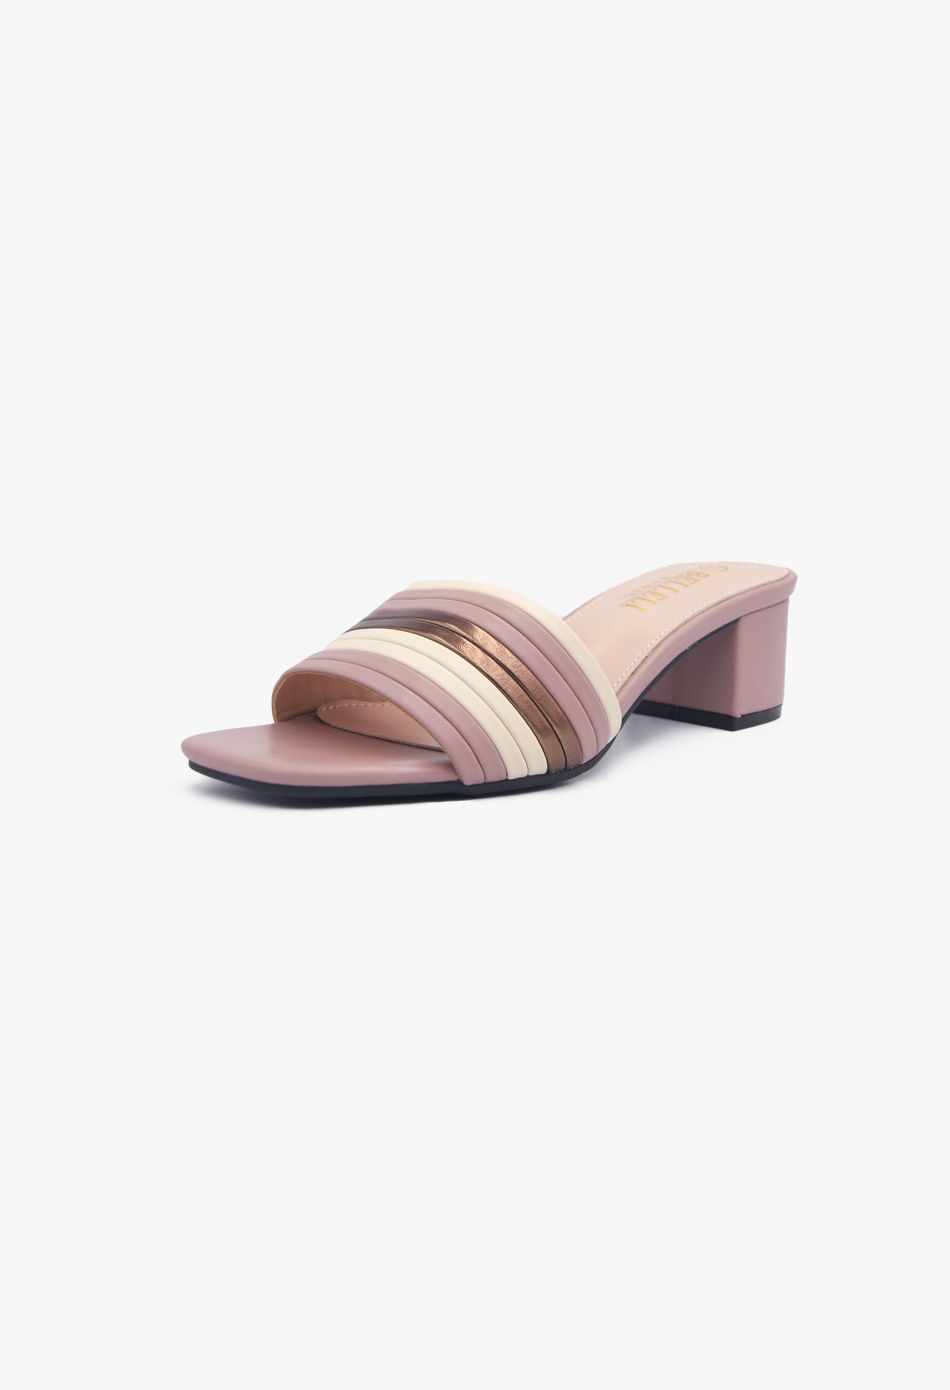 Mules με Χοντρό Χαμηλό Τακούνι Ροζ / AF-8-pink Ανοιχτά Παπούτσια joya.gr